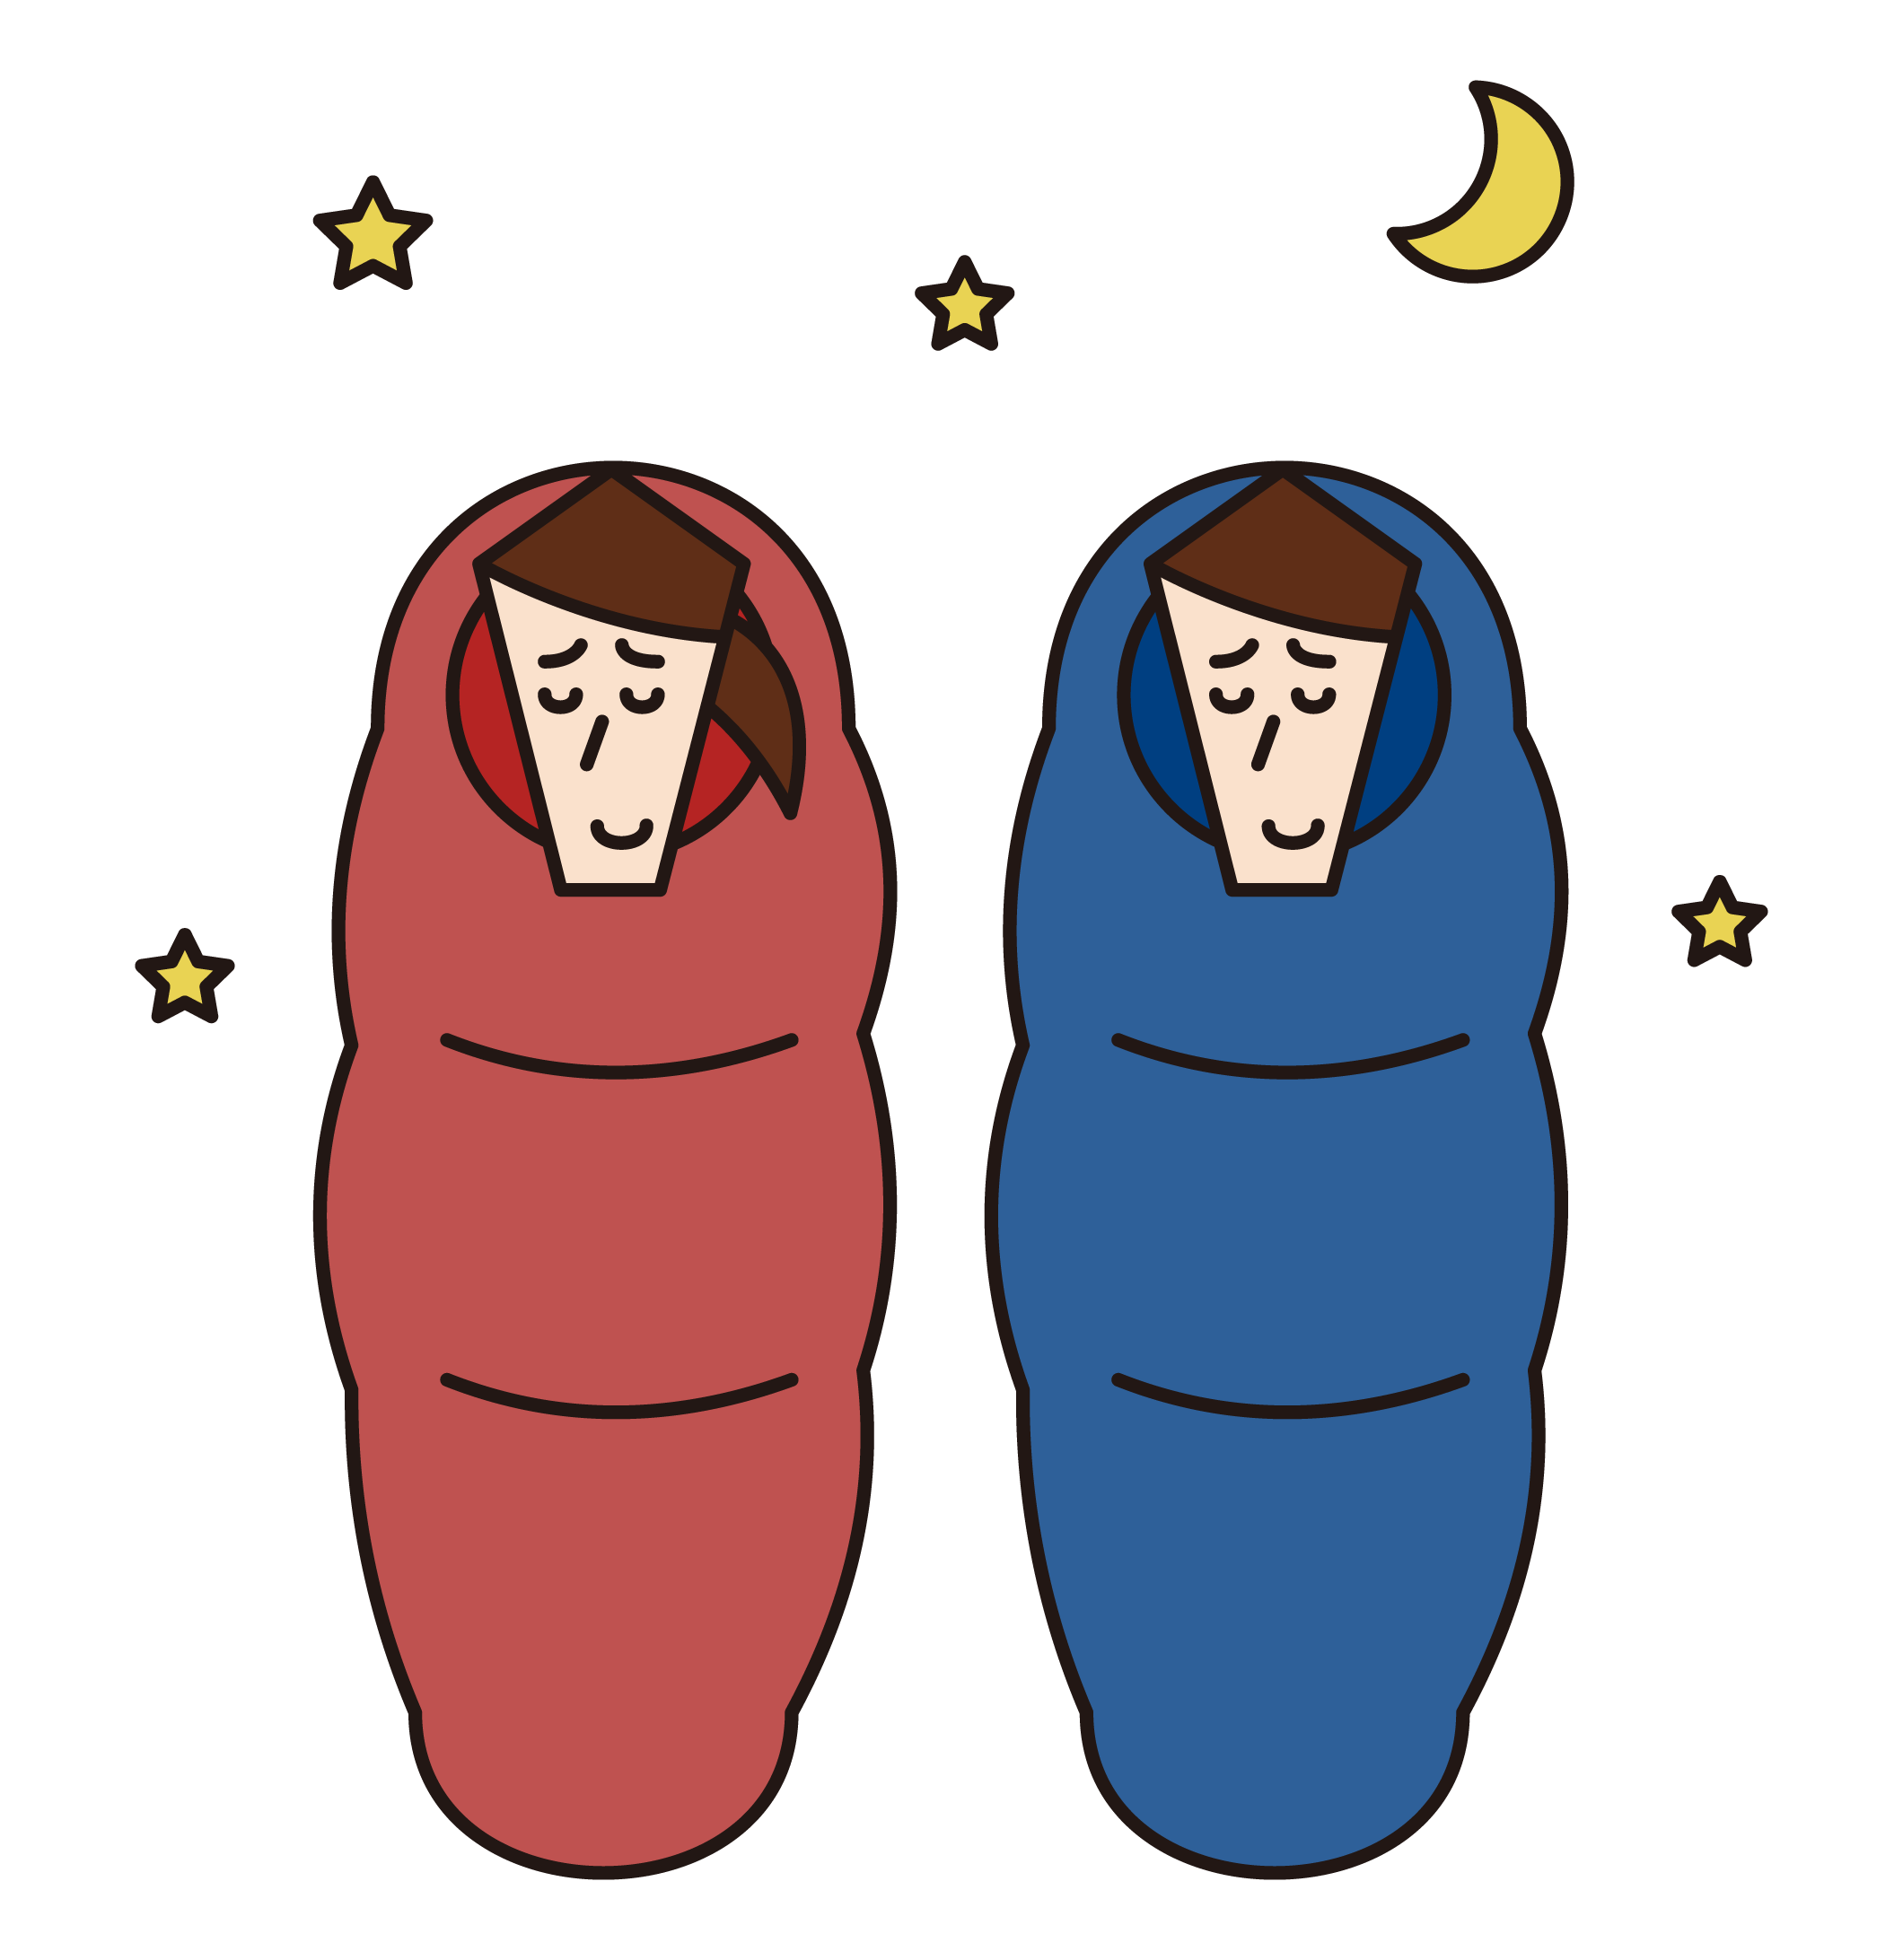 Illustration of people sleeping in sleeping bags